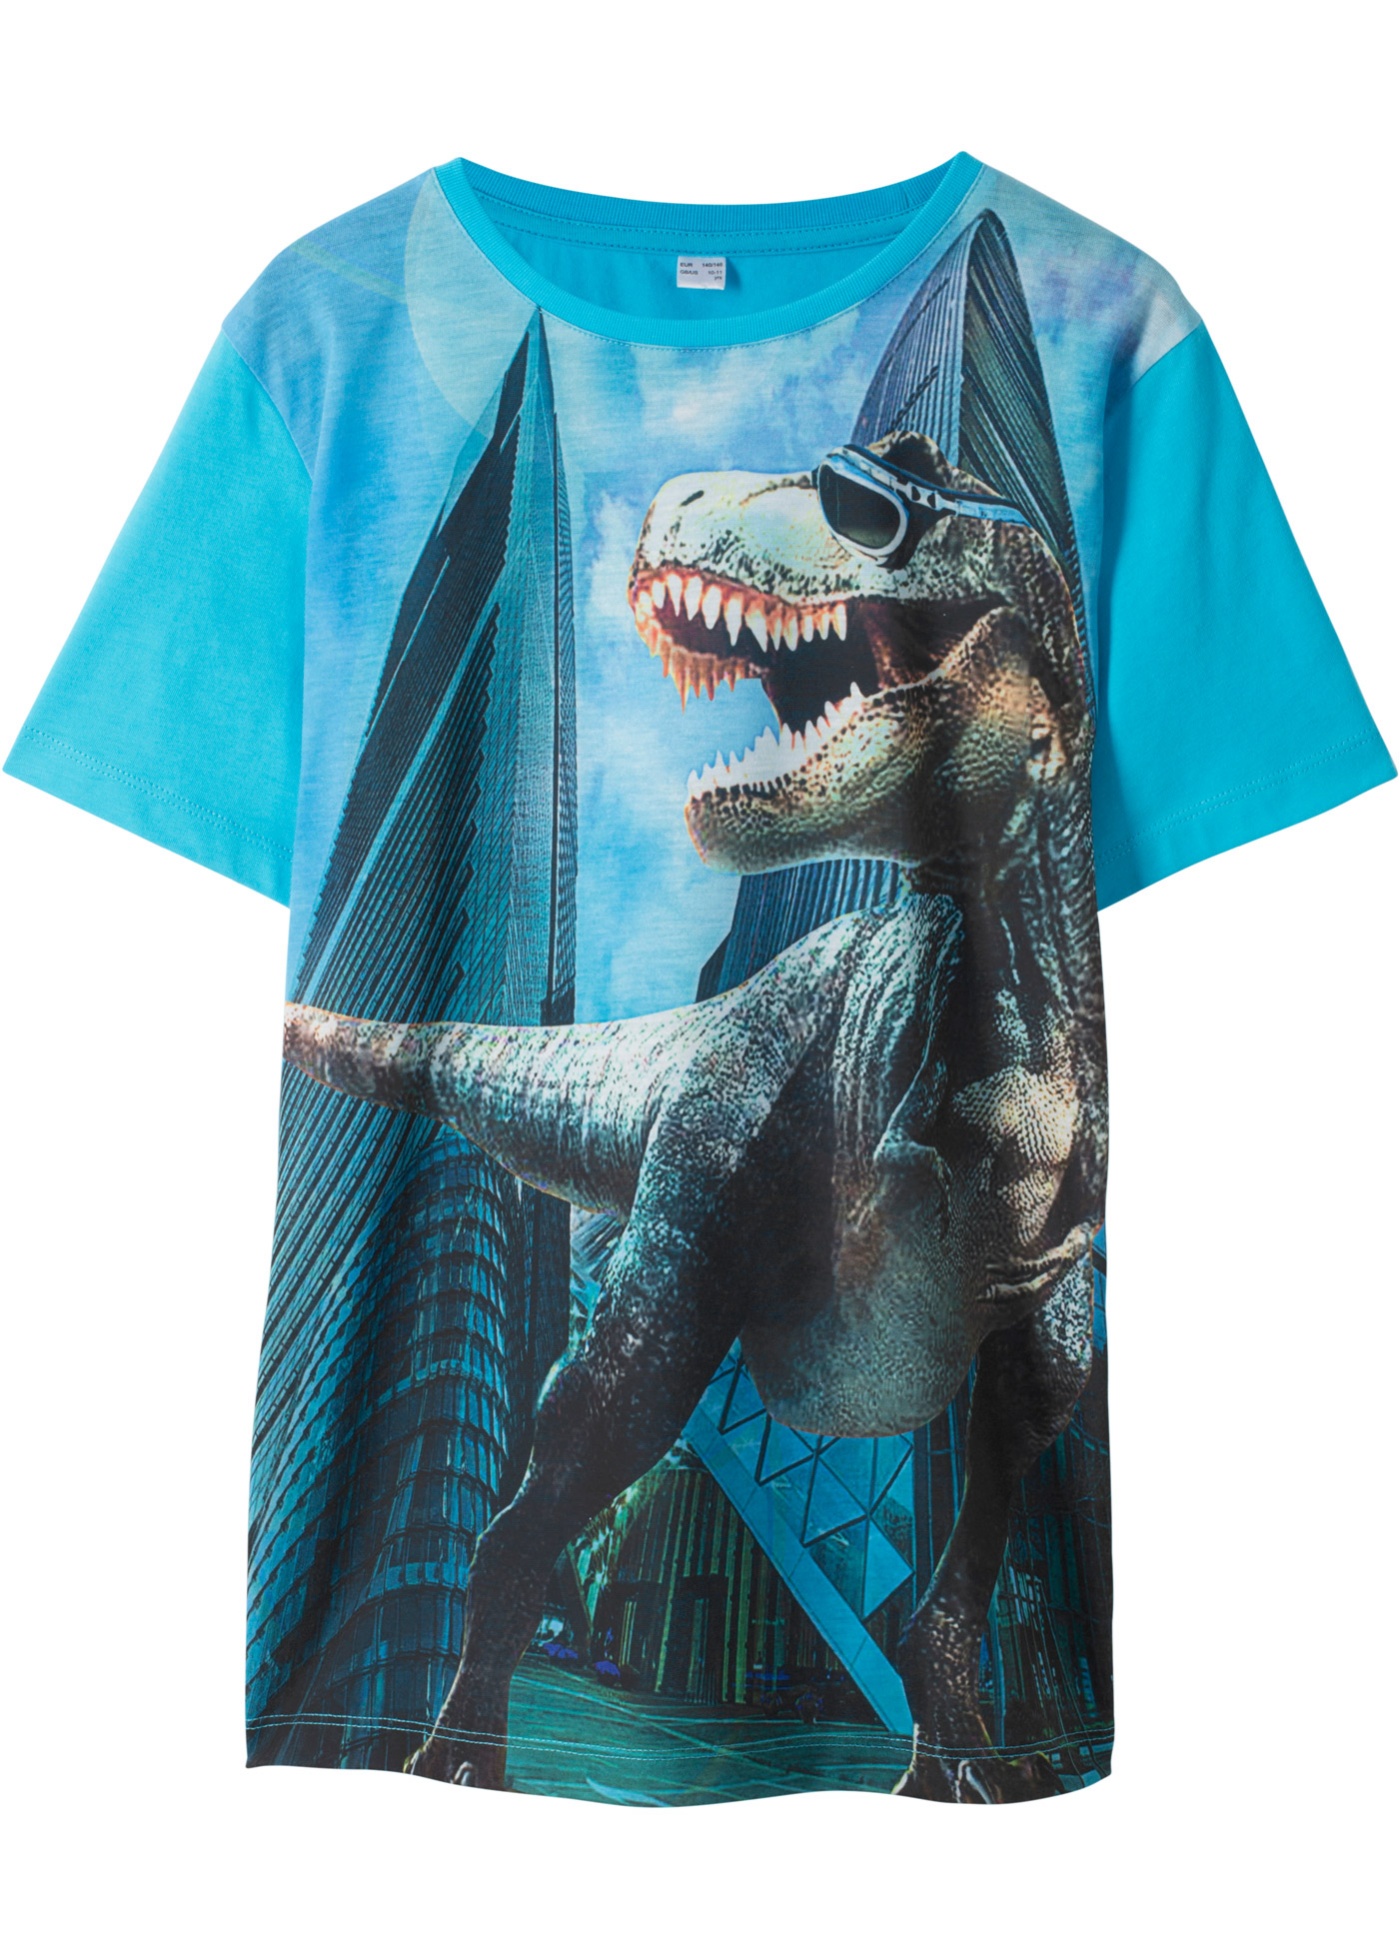 Tričko s potlačou dinosaura